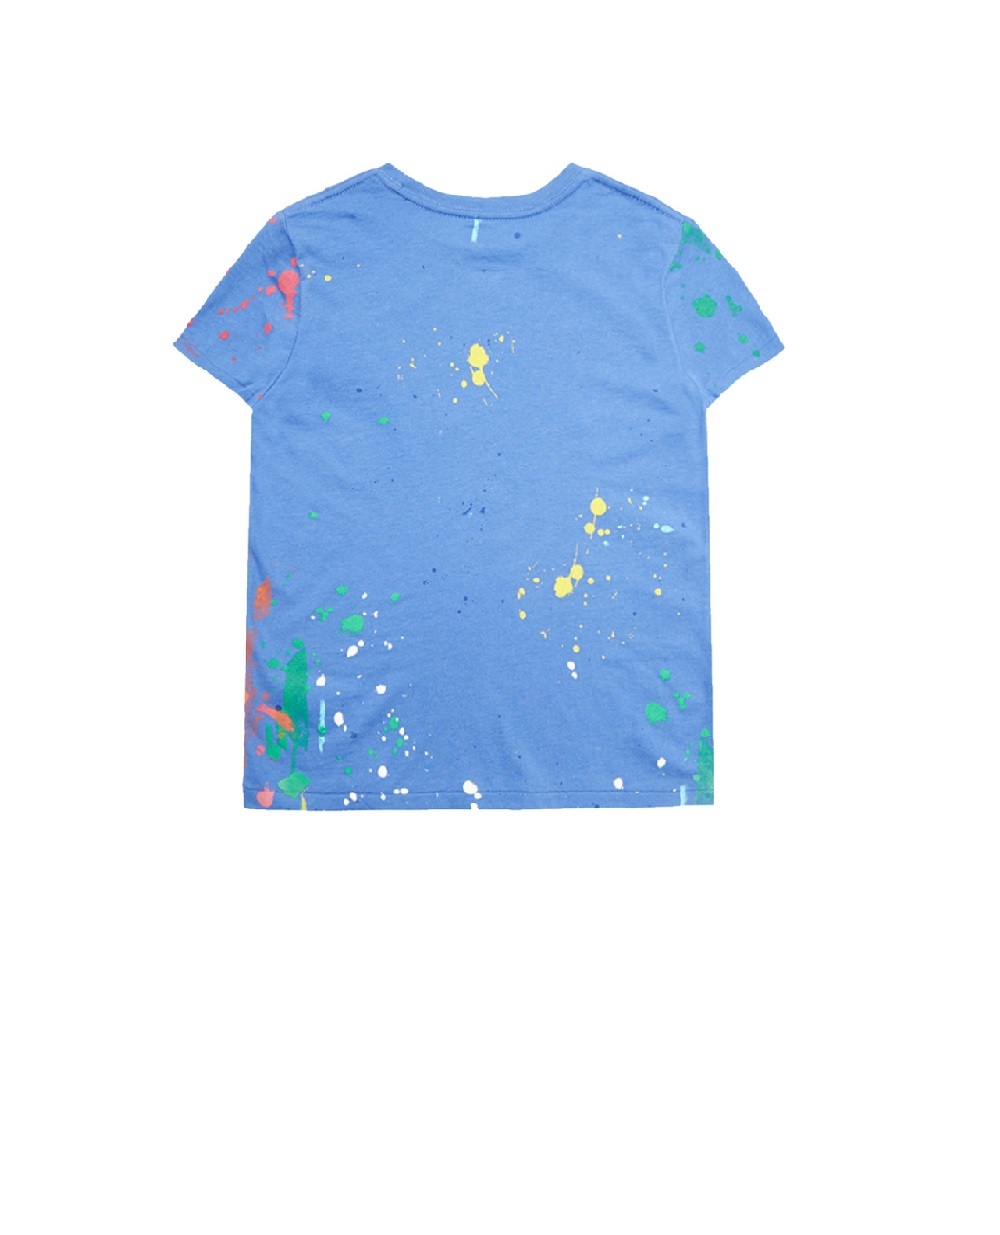 Детская футболка Polo Bear Polo Ralph Lauren Kids 312868484002, синий цвет • Купить в интернет-магазине Kameron